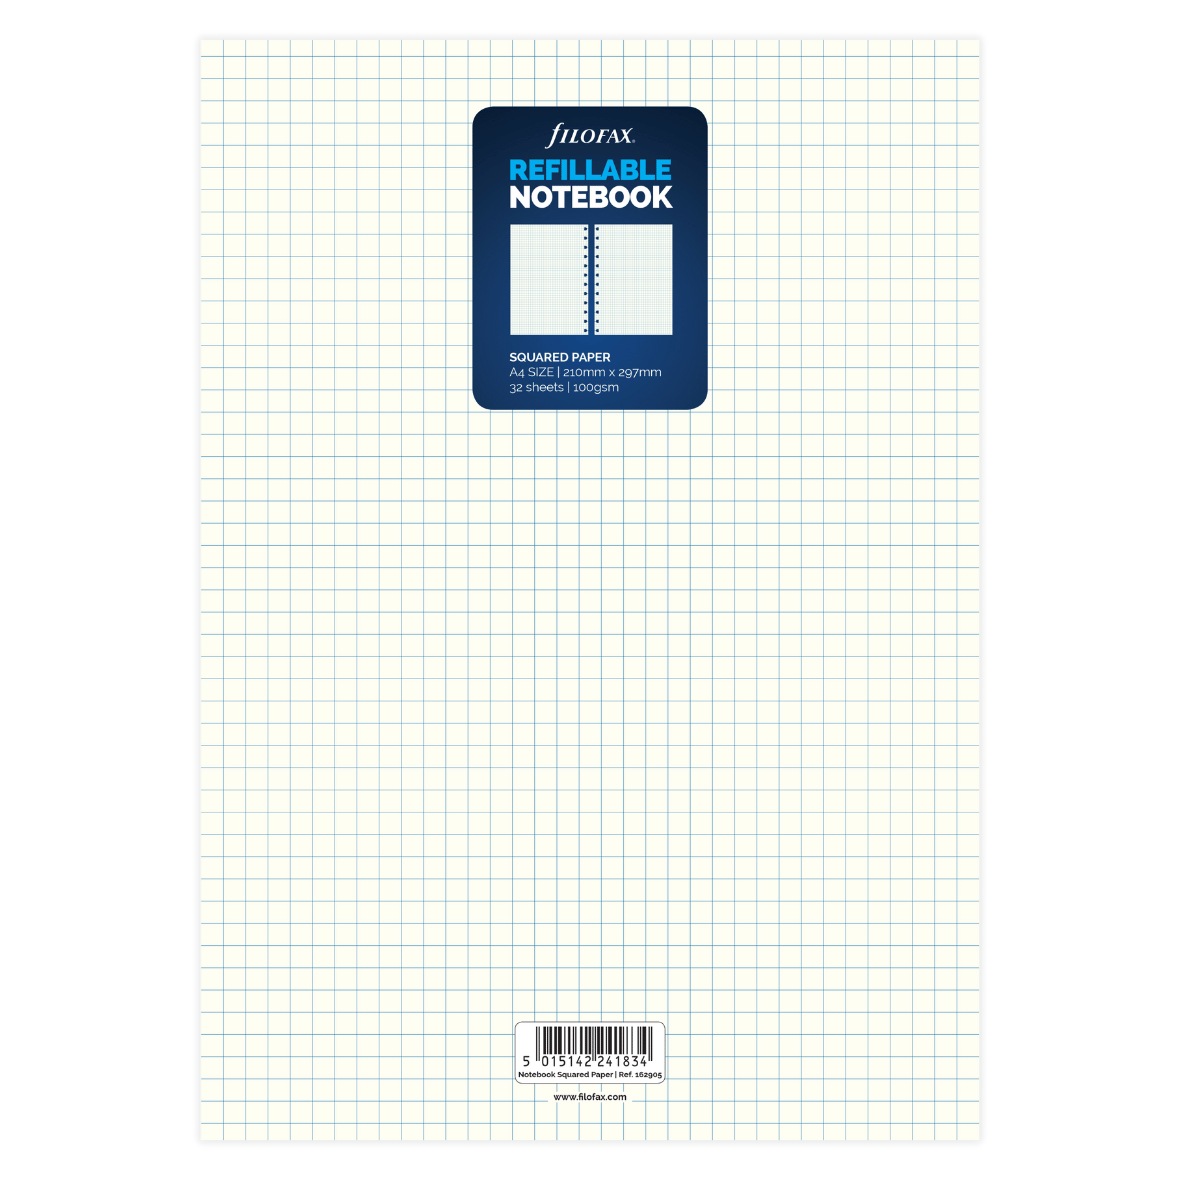 162905_Filofax Notebooks A4 Squared Insert Card.jpg